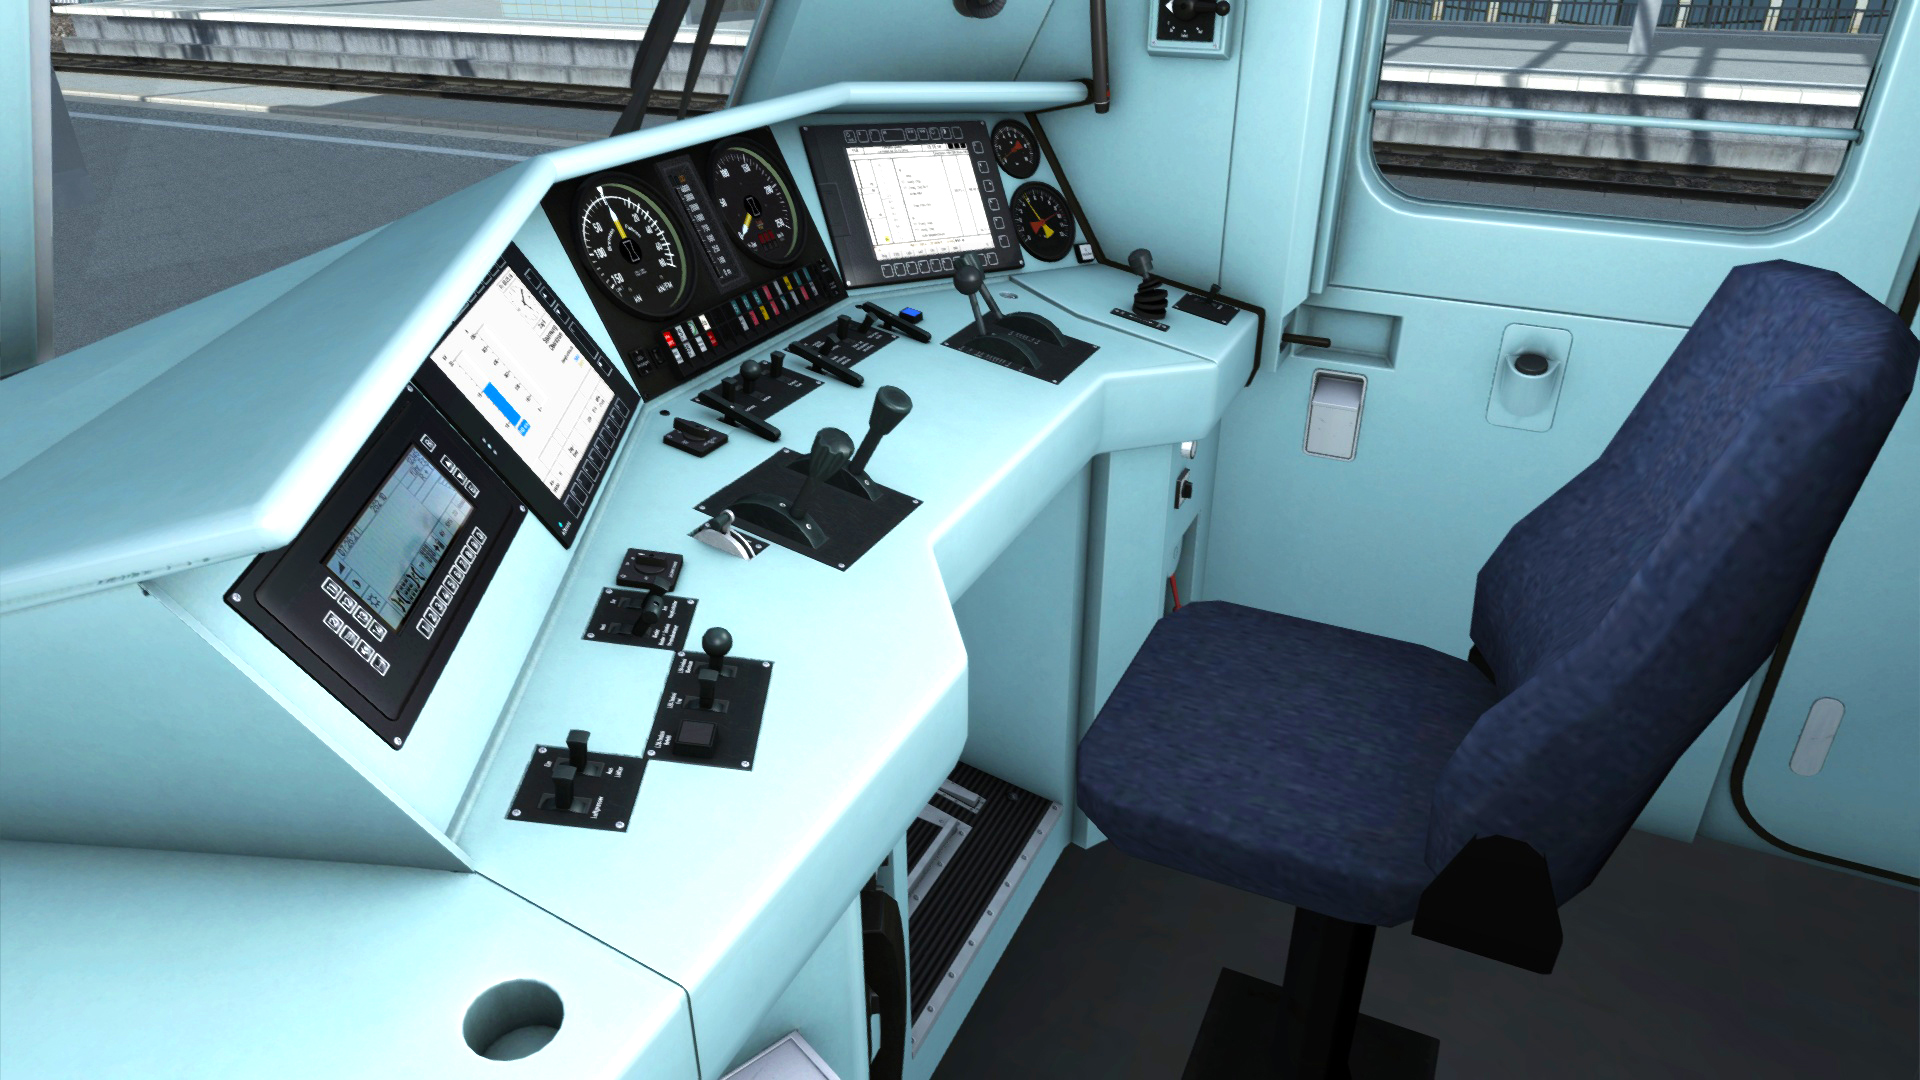 Train Simulator: DB BR 101 Loco Add-On screenshot